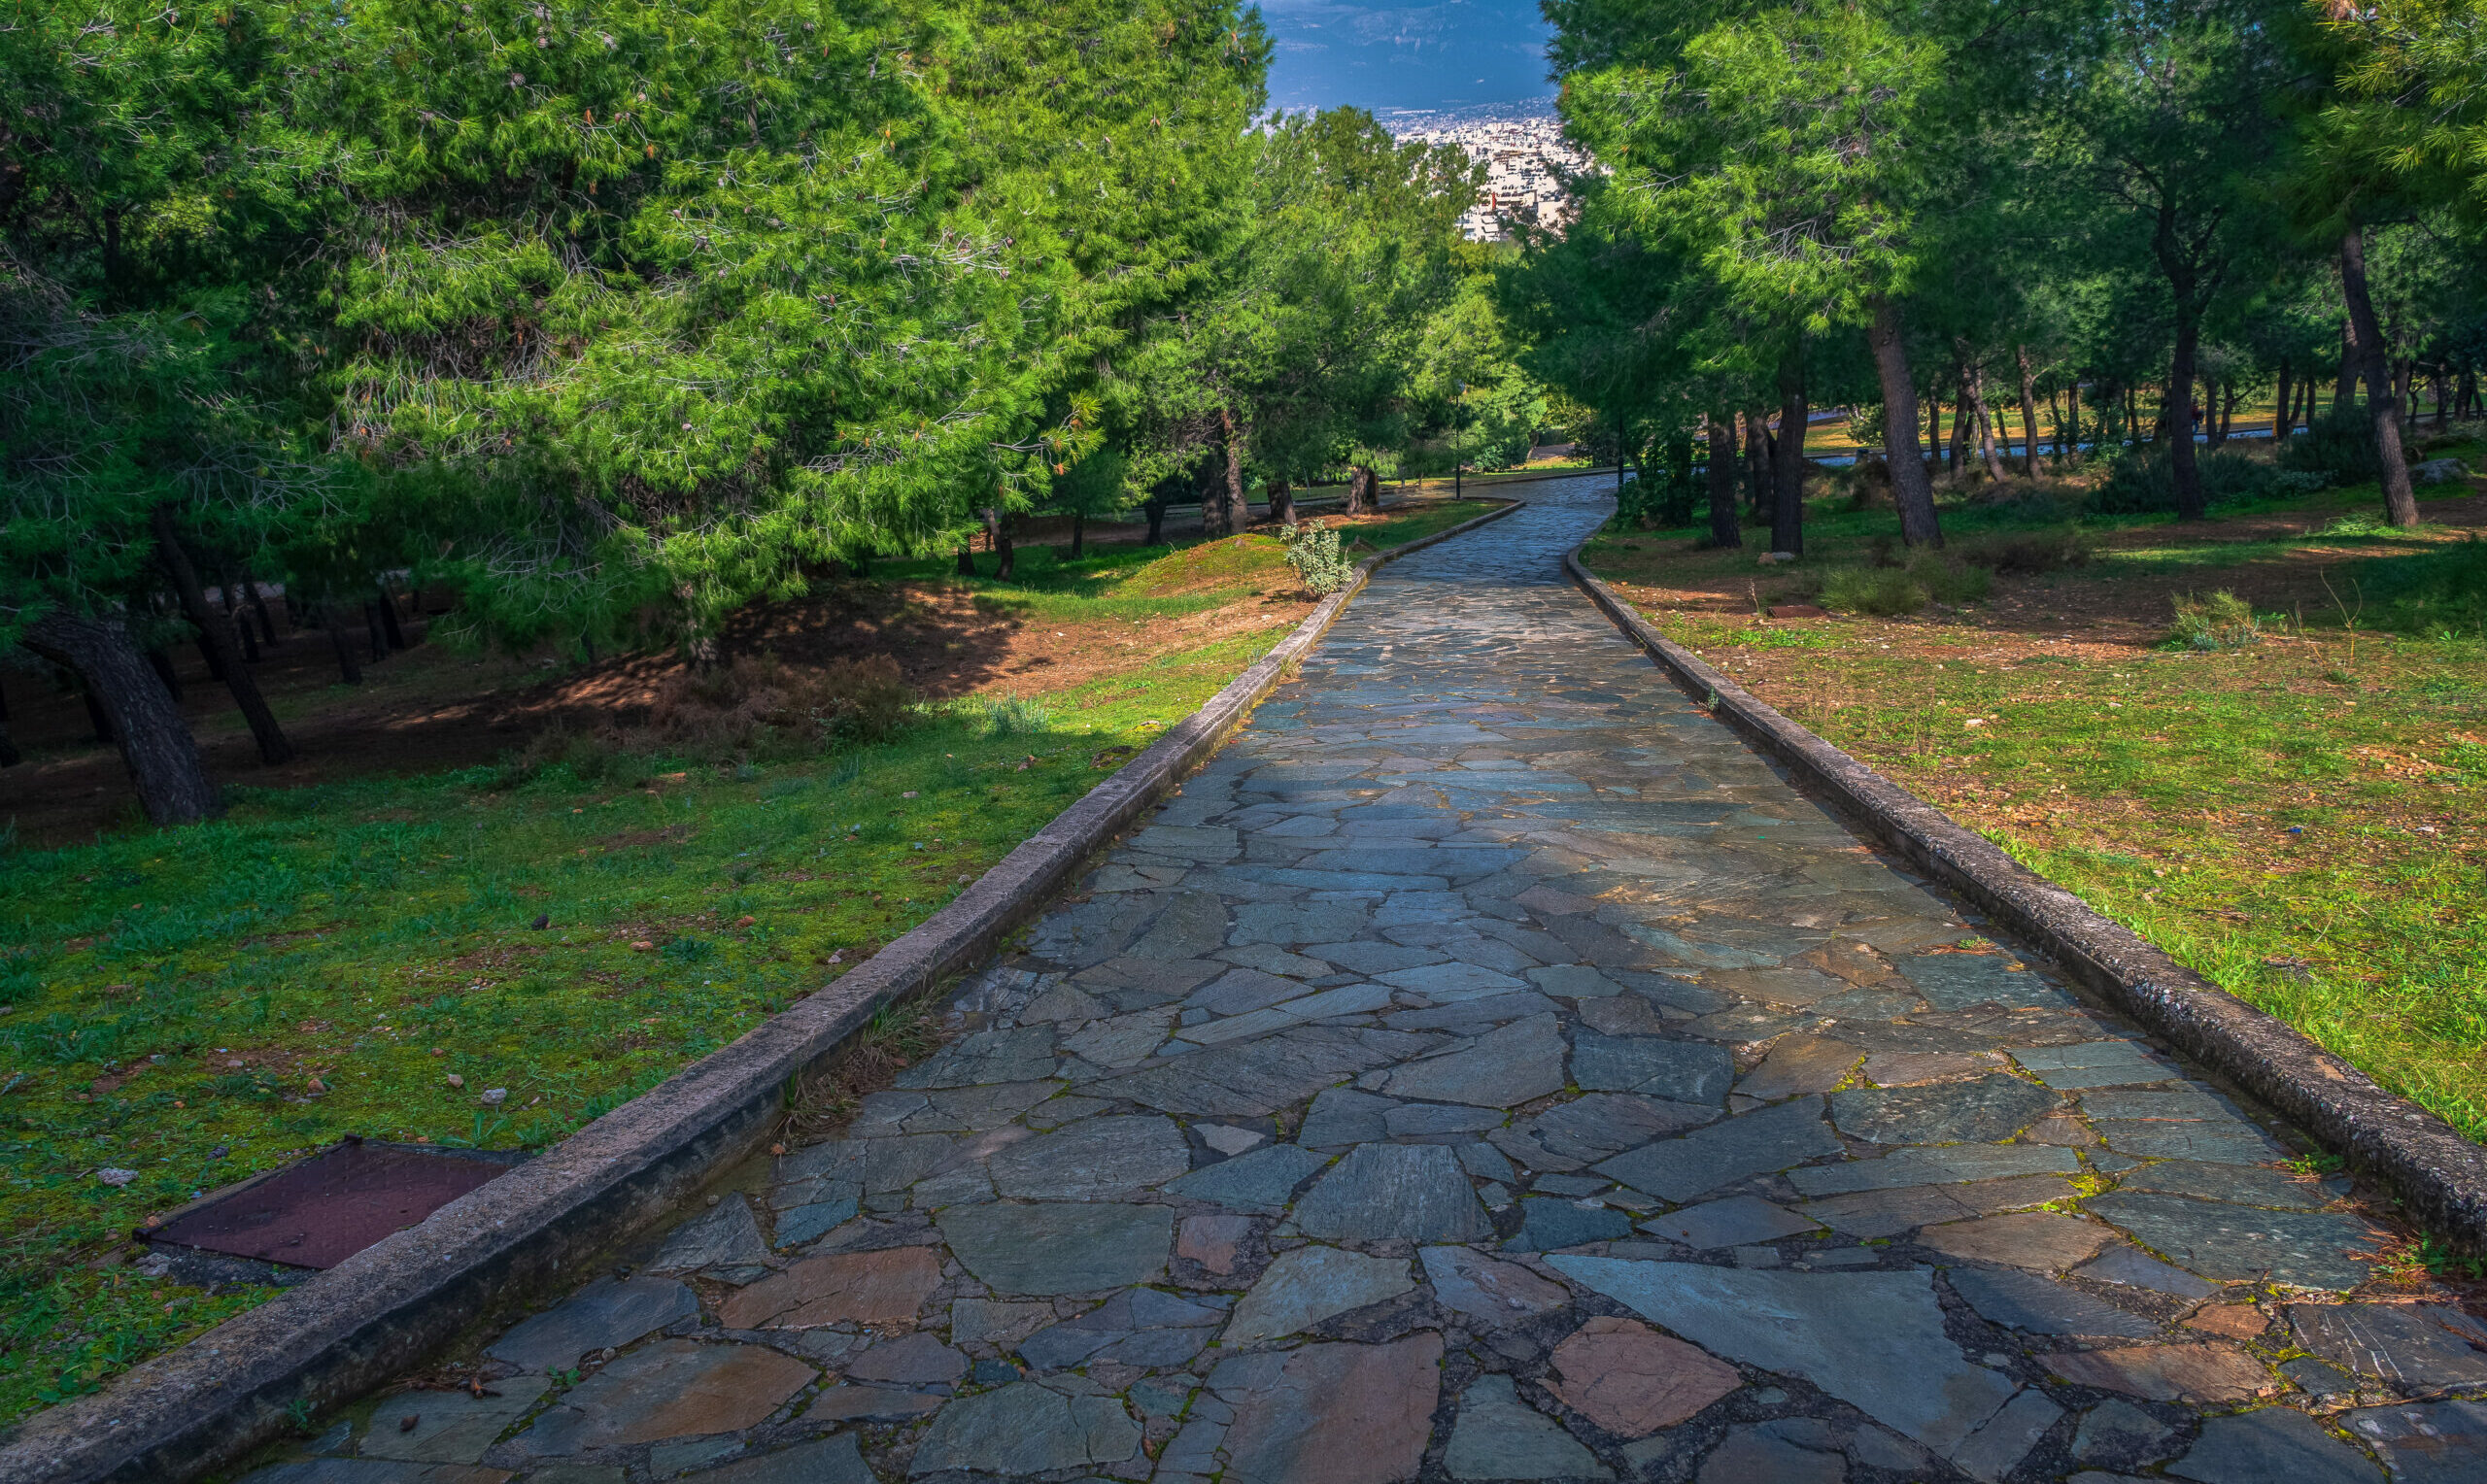 Veikos Grove: The favorite green destination of Athens